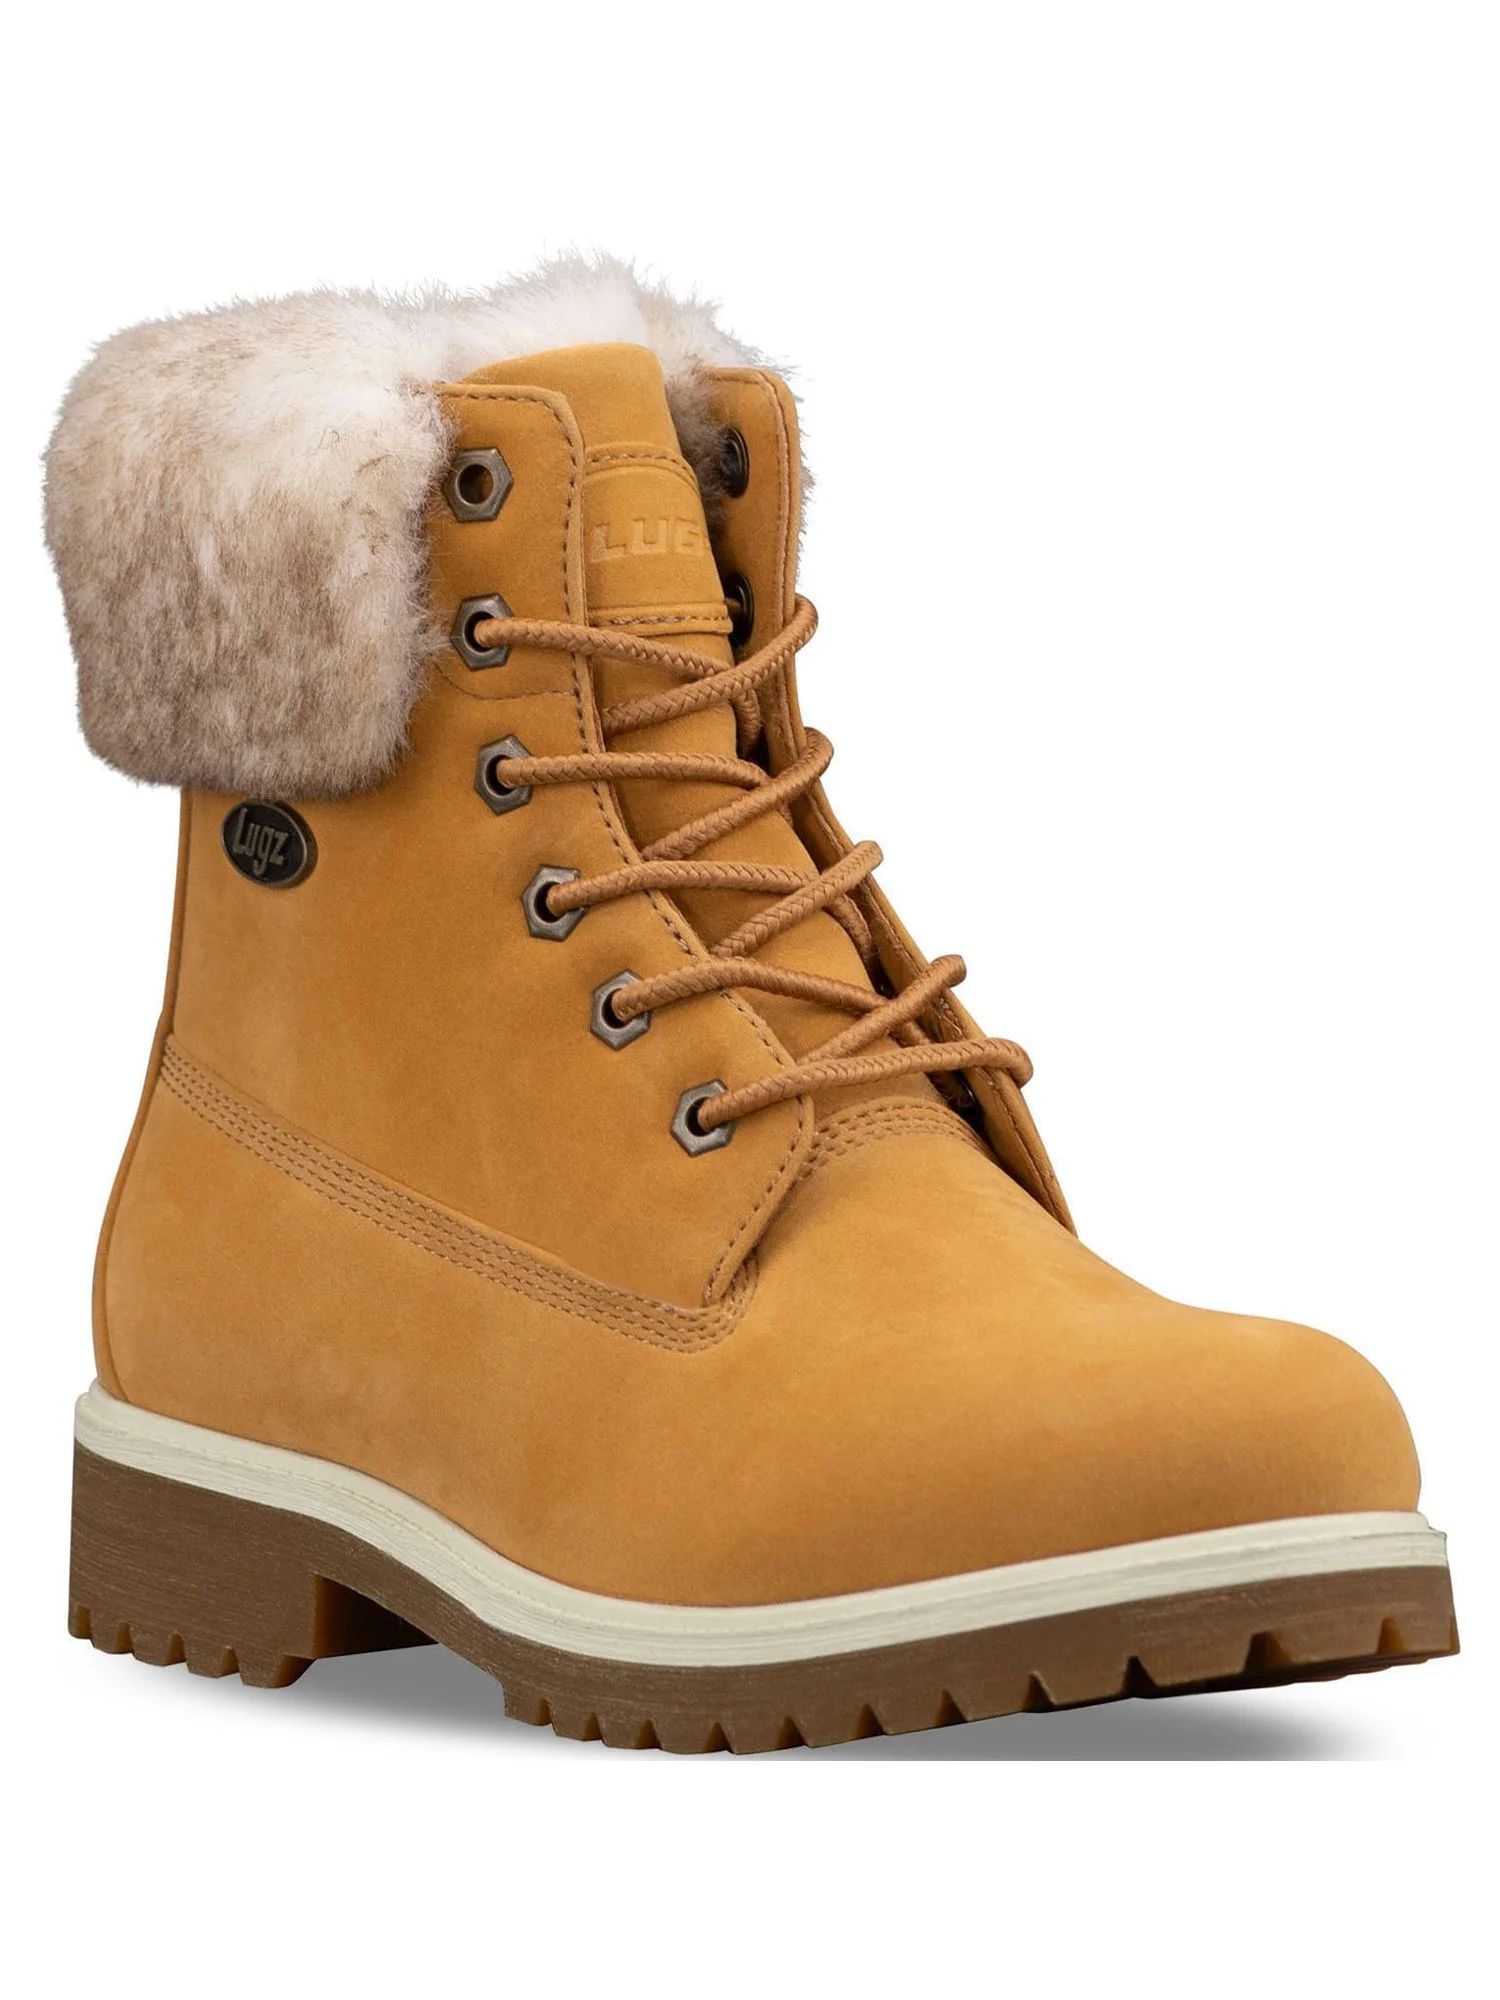 Lugz Women's Hudson Lace Up Faux Fur Boots, Sizes 5-12 | Walmart (US)